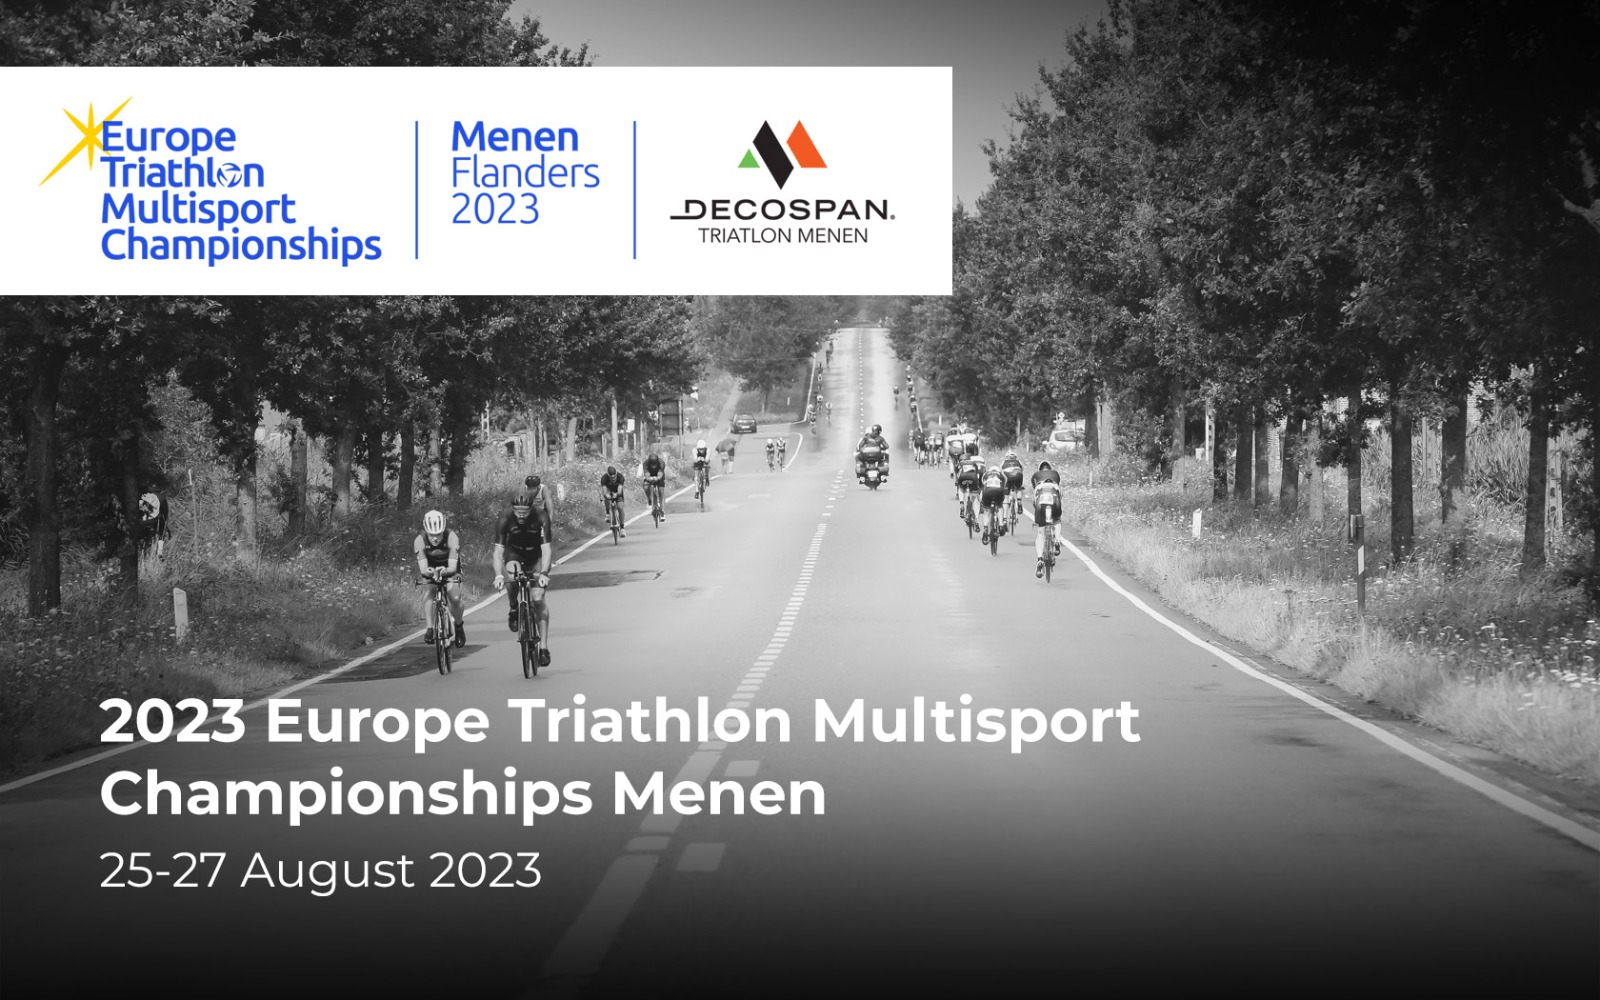 Team Italia Age Group: il 10 luglio scadono le iscrizioni per l'Europe Triathlon Multisport Championships Menen